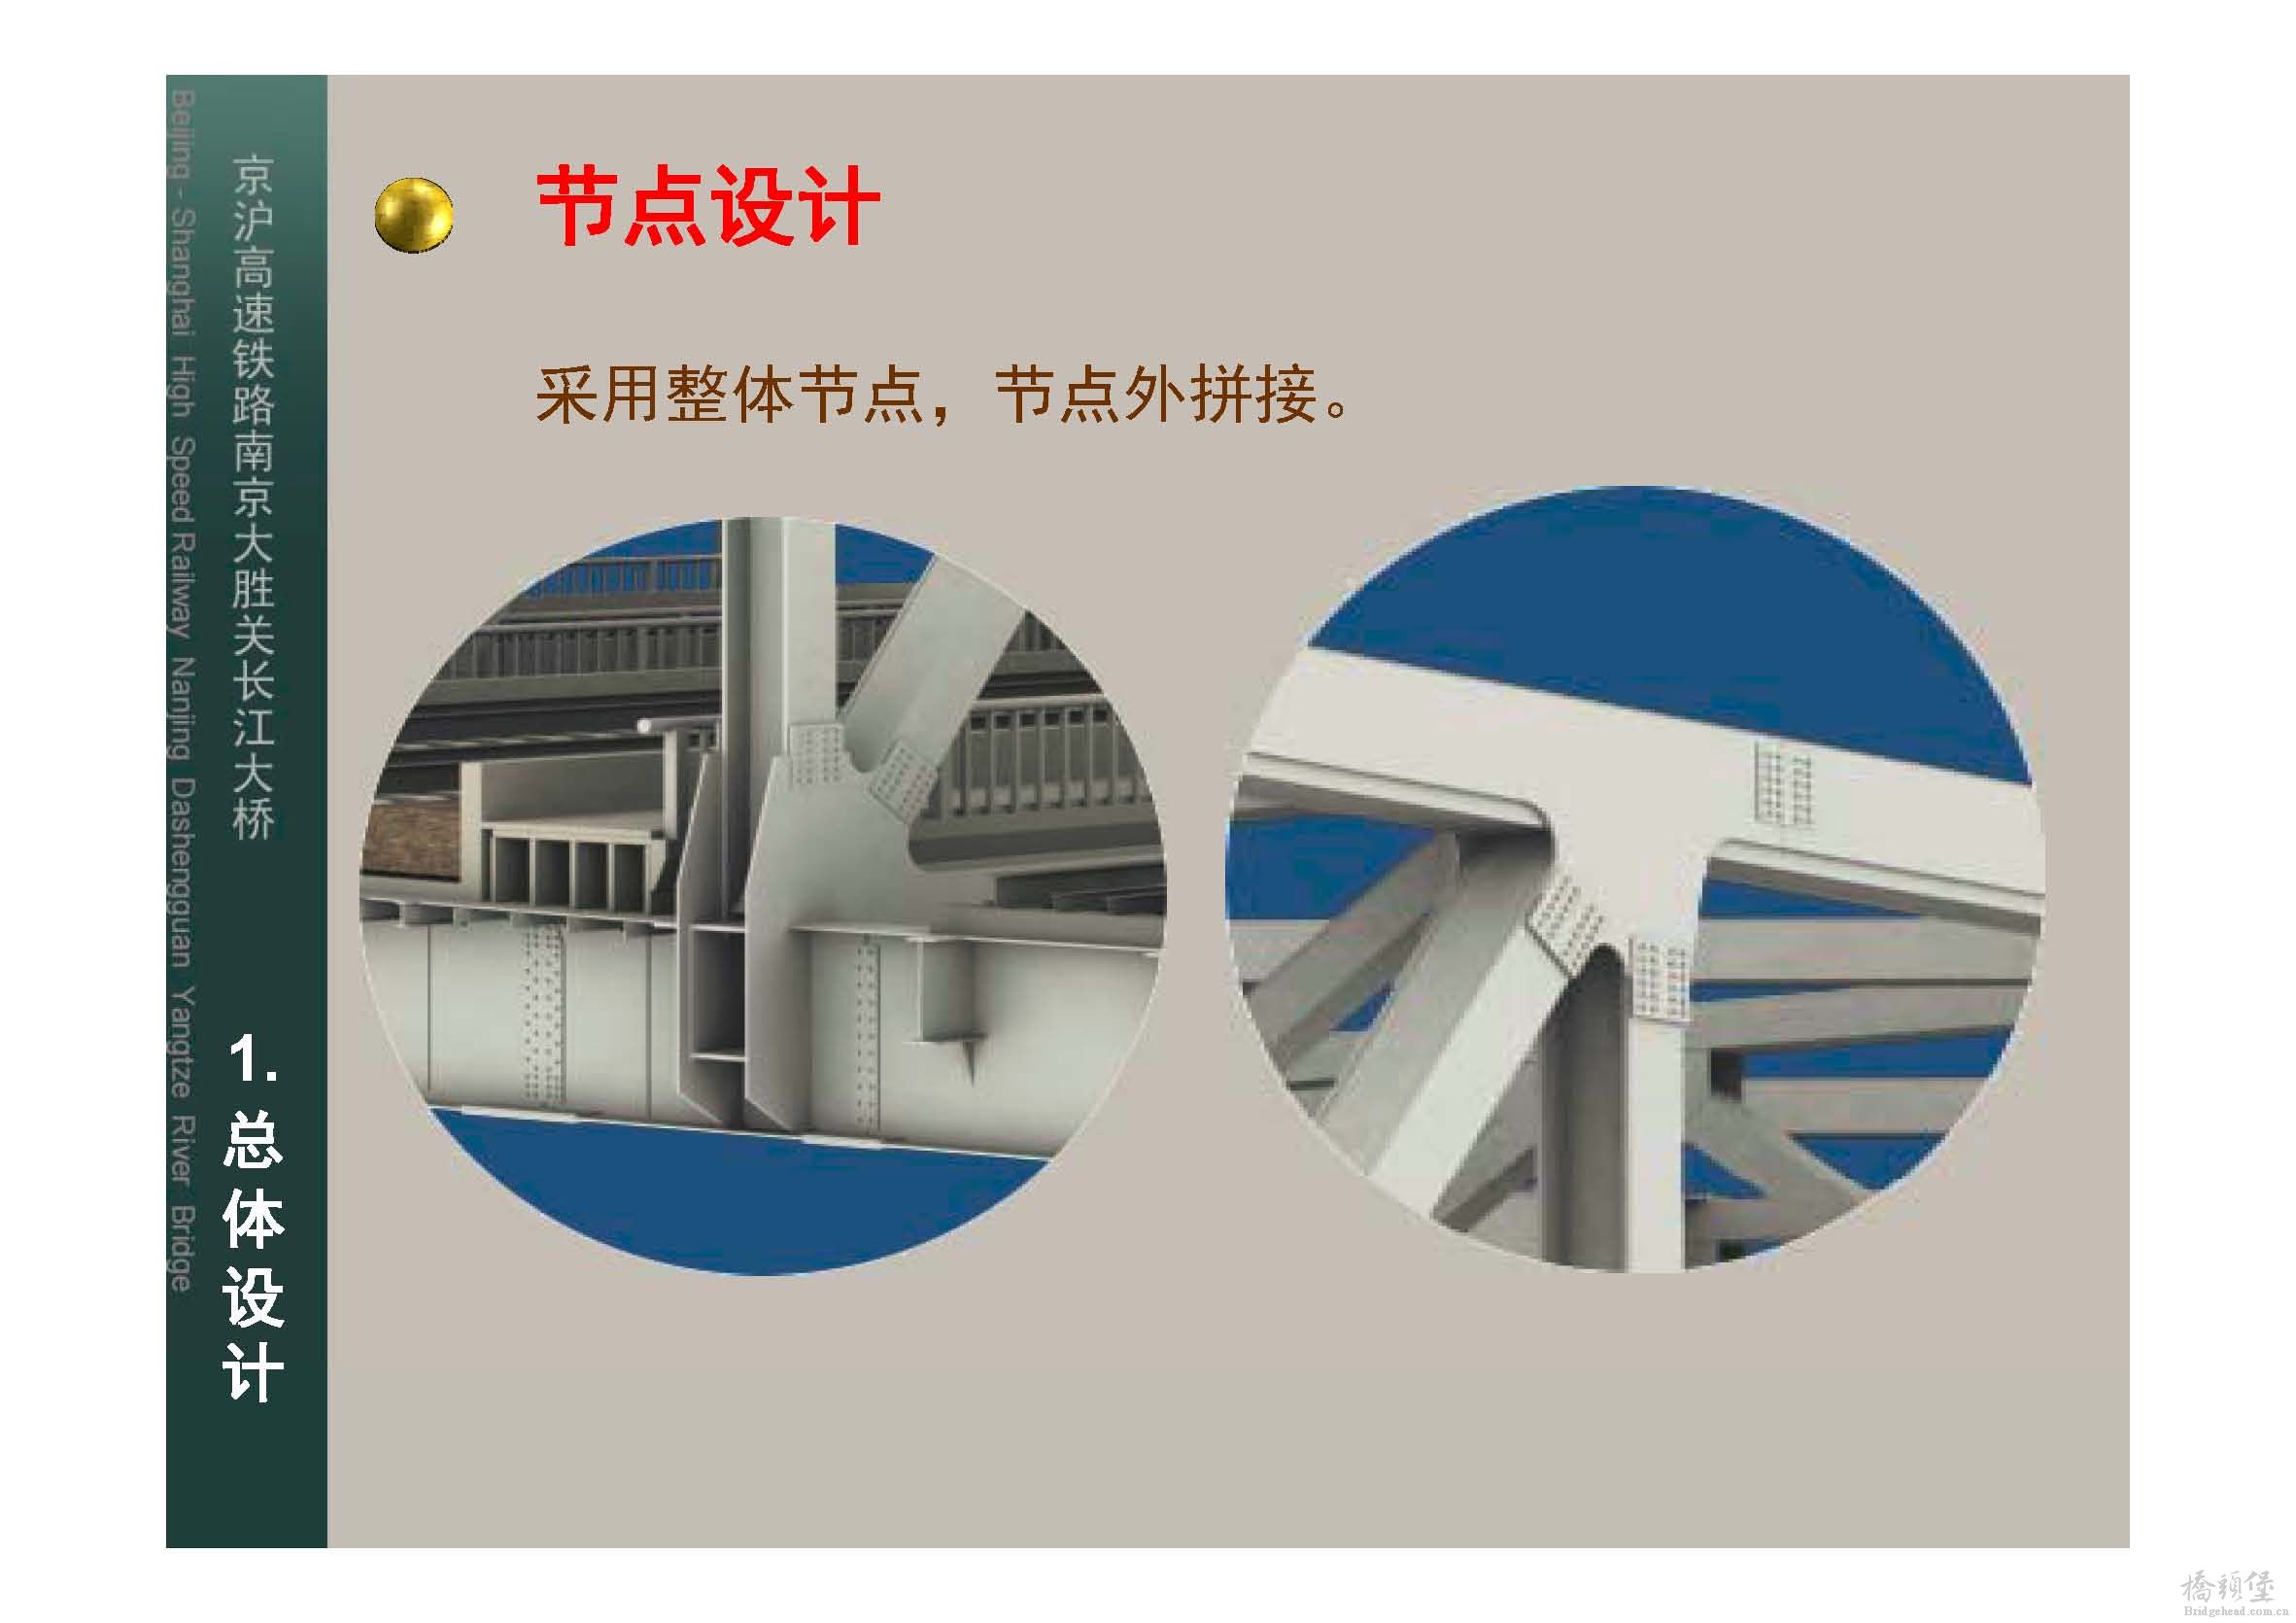 南京大胜关桥施工设计汇报_页面_10.jpg